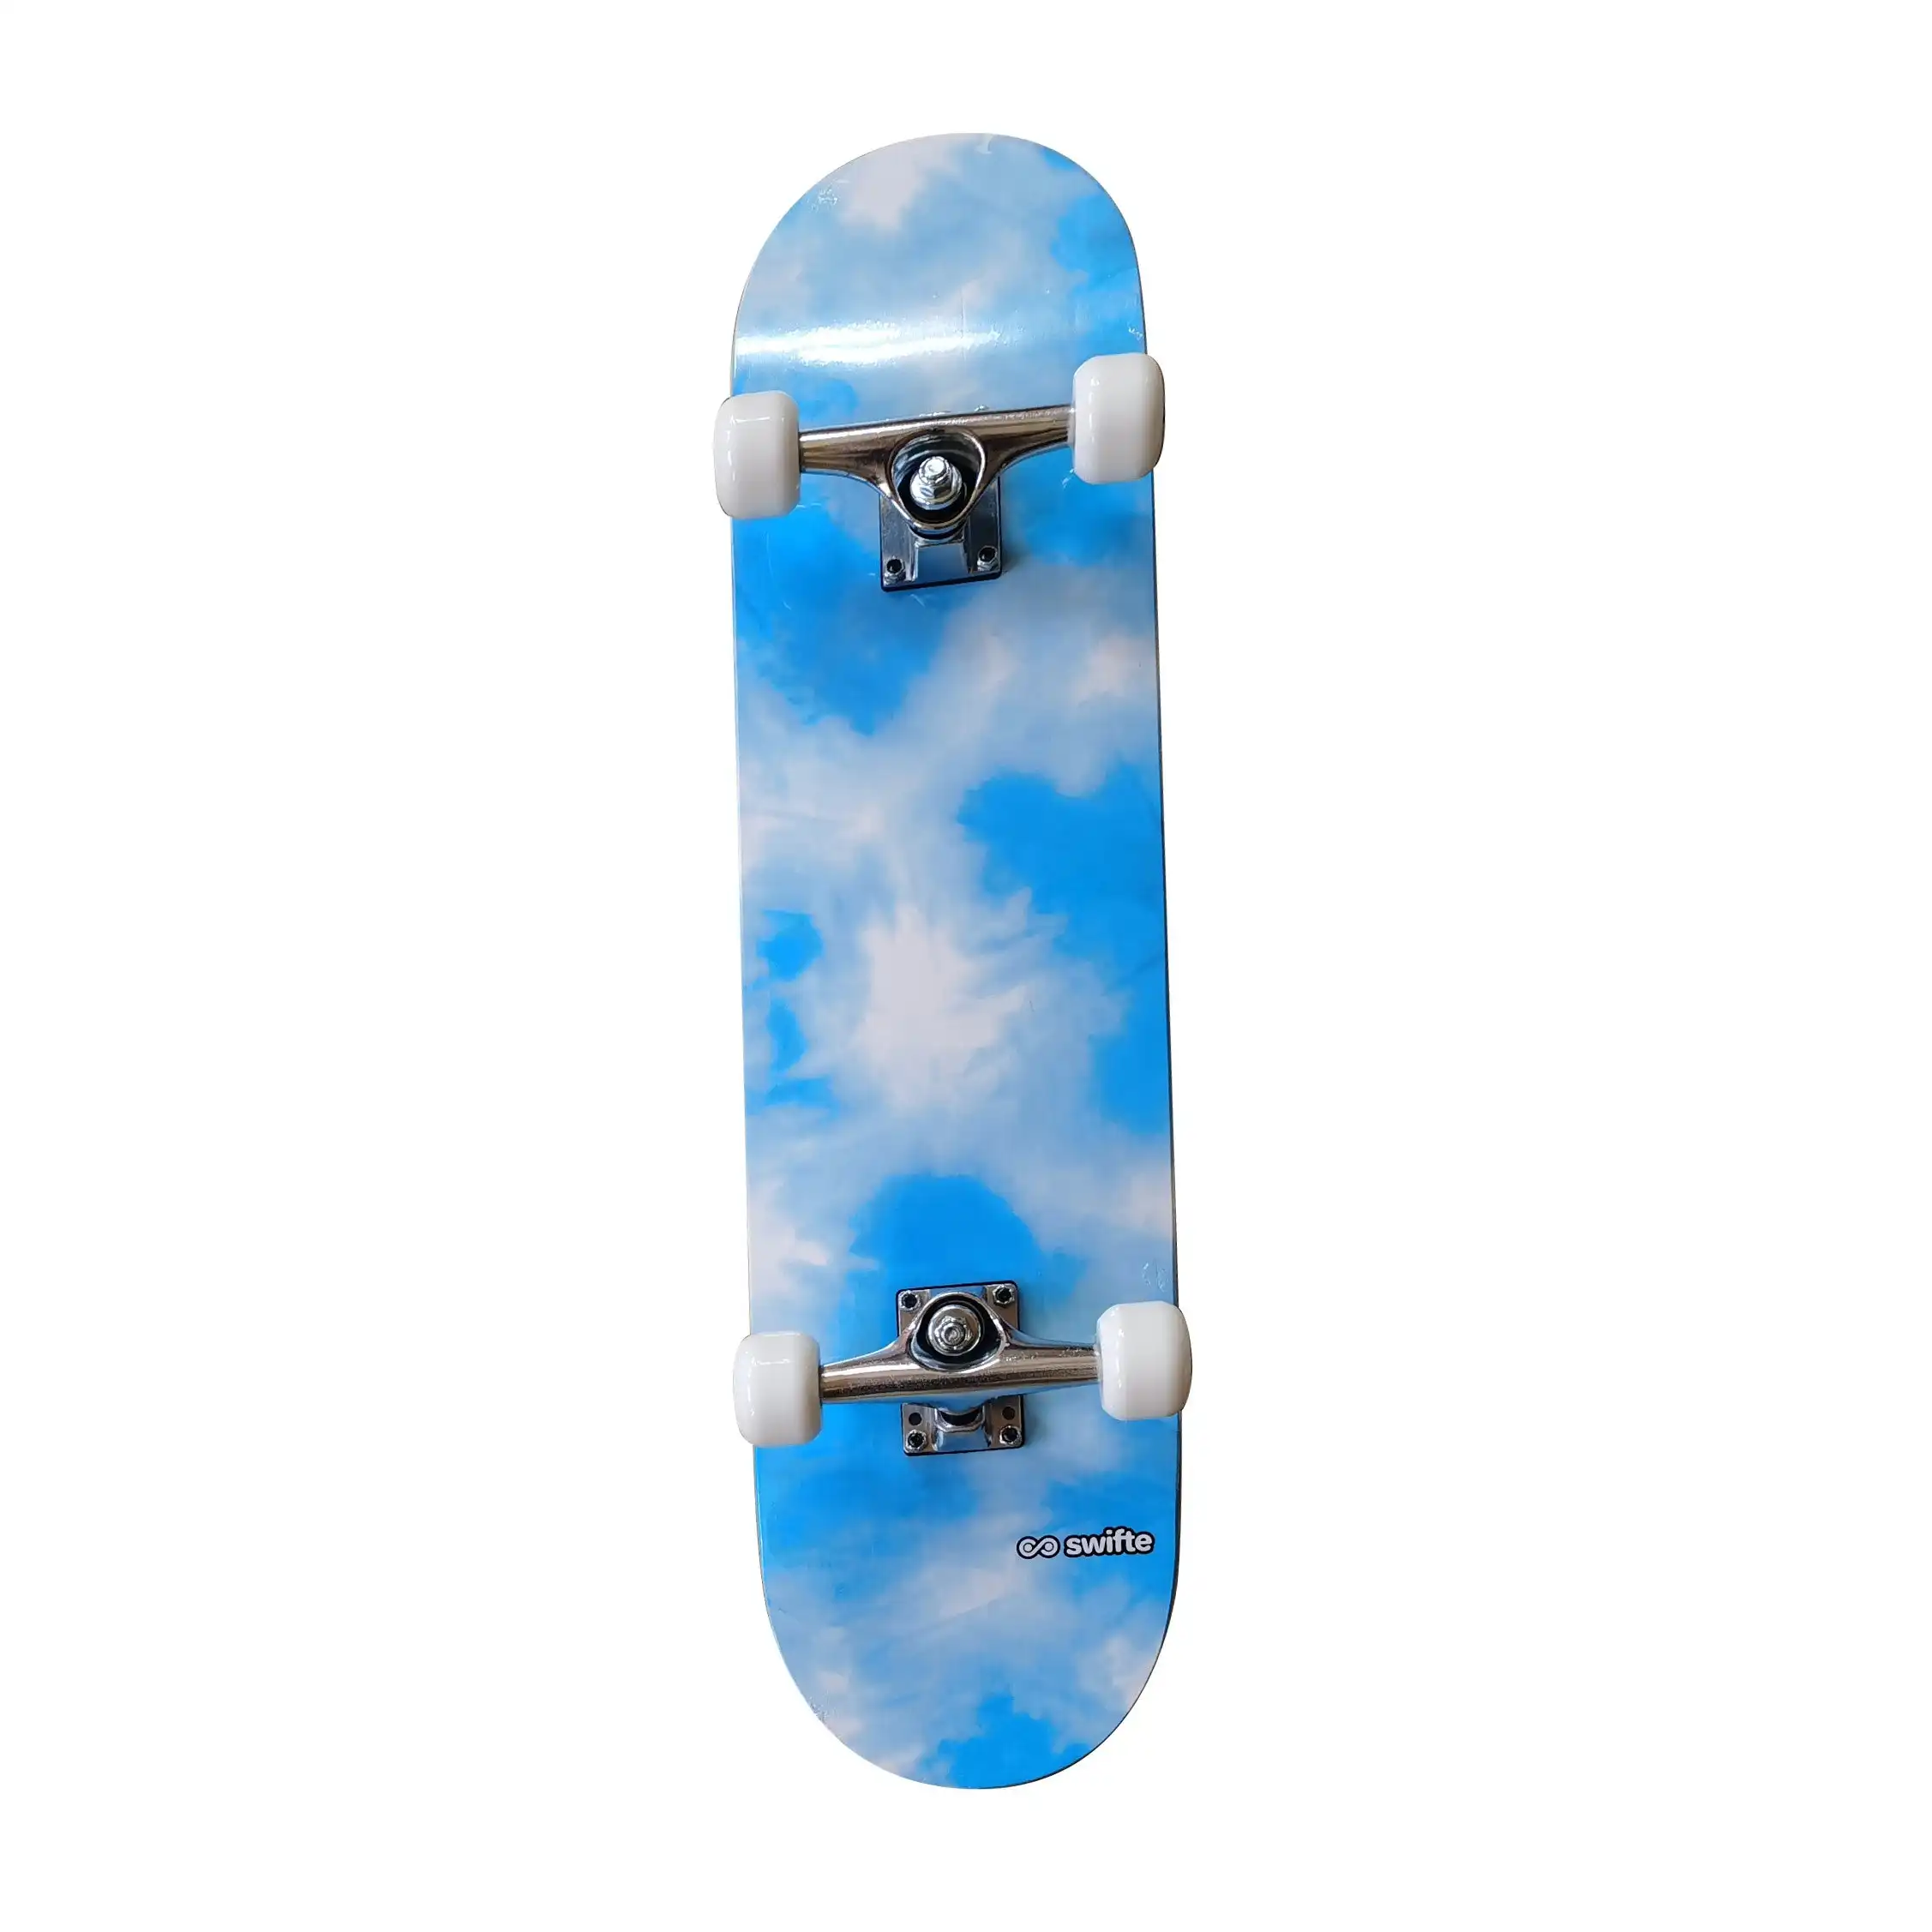 Swifte 31 X 7.5" Skateboard - Blue Tye Dye